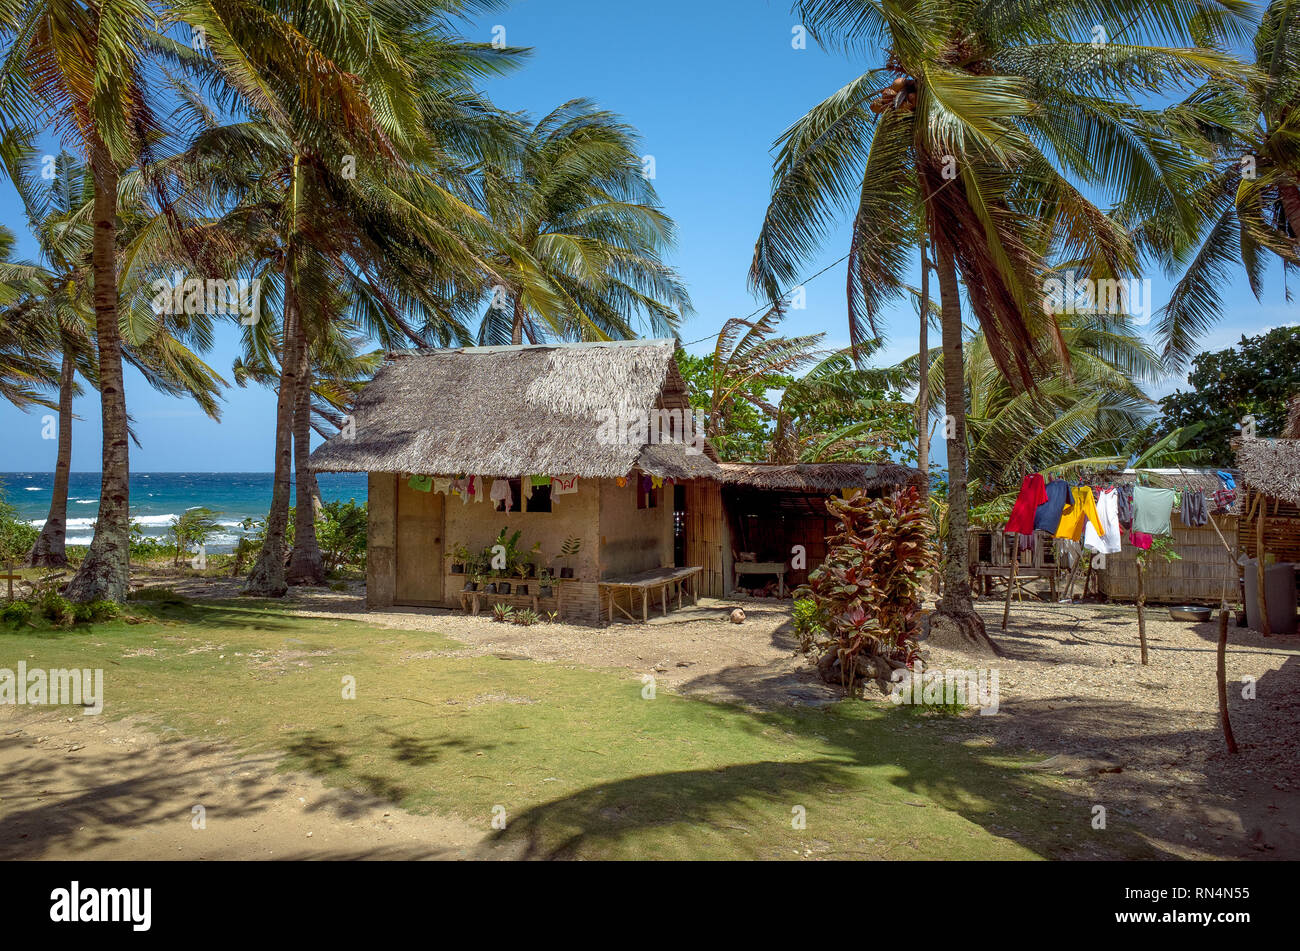 Huttes avec plage, palmiers, et le séchage des vêtements, El Nido - Philippines Banque D'Images